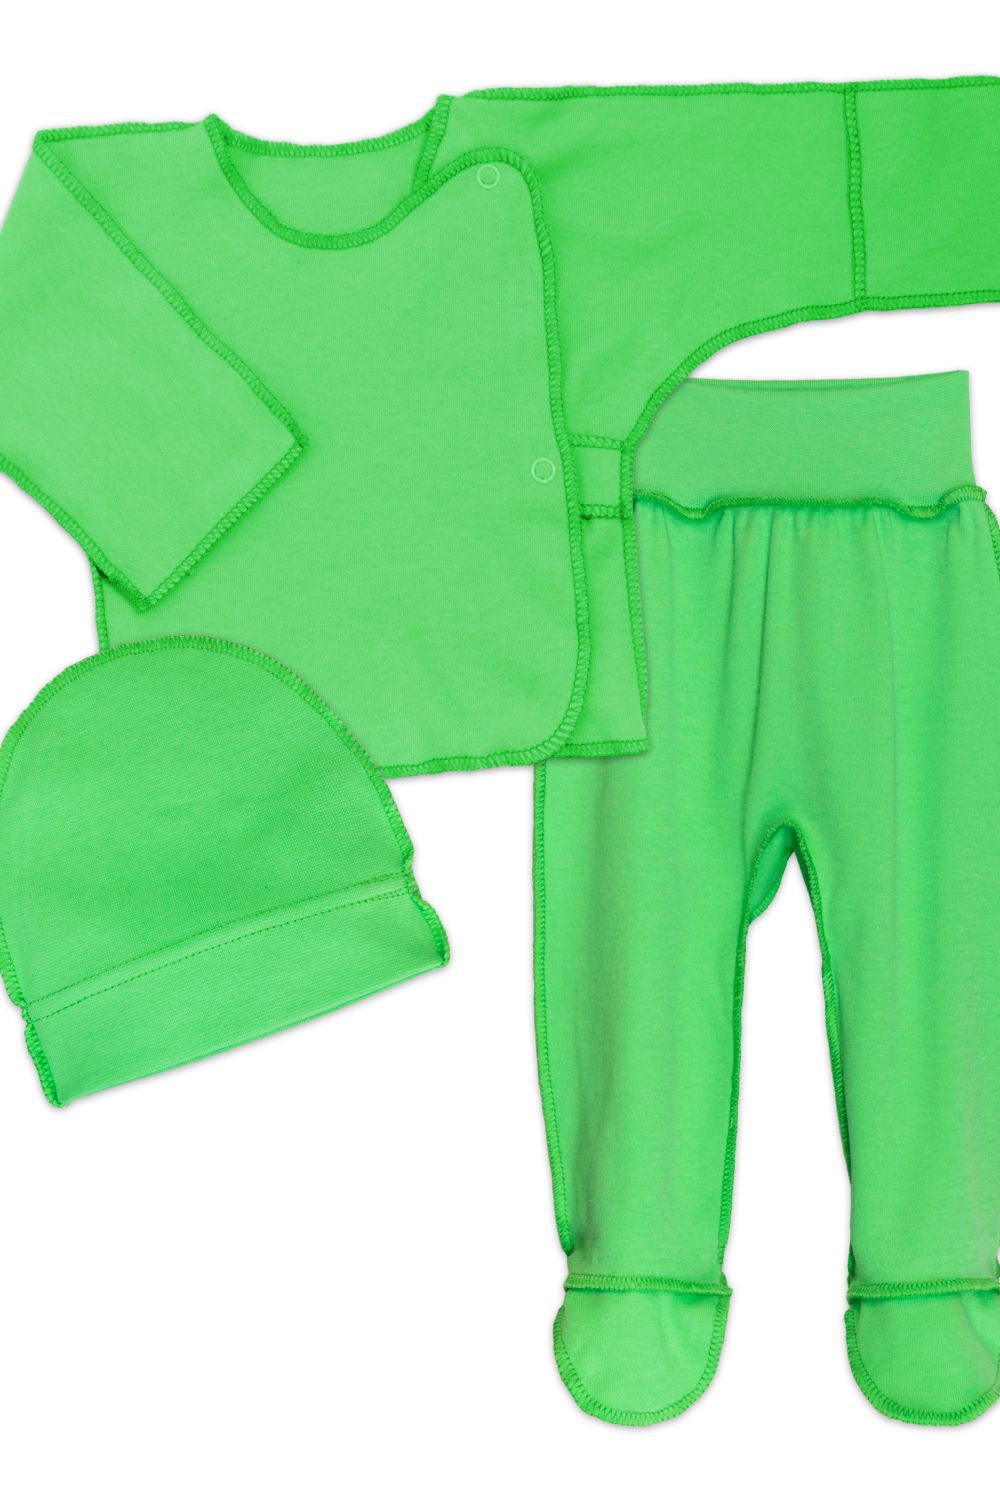 Комплект для новорожденных (распашонка, шапочка, ползунки) 4299 - зеленый